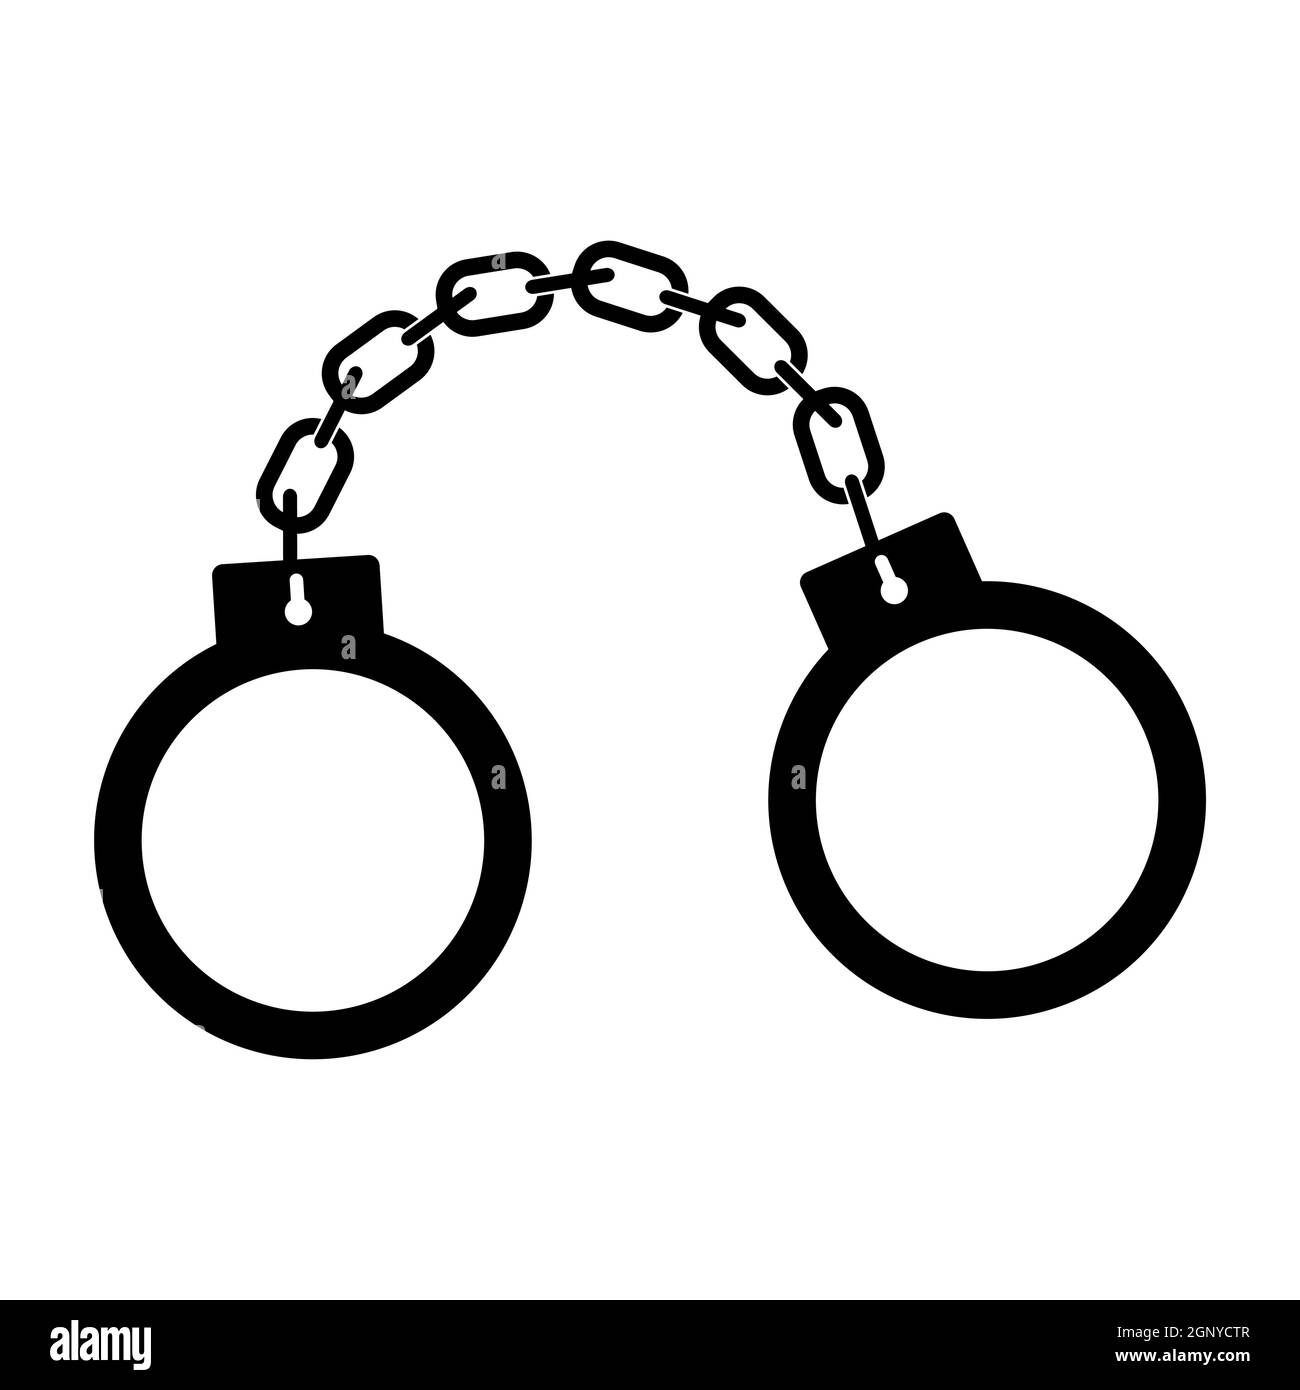 Icona della silhouette dei bracciali. Simbolo di arresto semplice. Forma nera vettoriale isolata su sfondo bianco. Disegno del pittogramma di punizione del crimine. Illustrazione Vettoriale